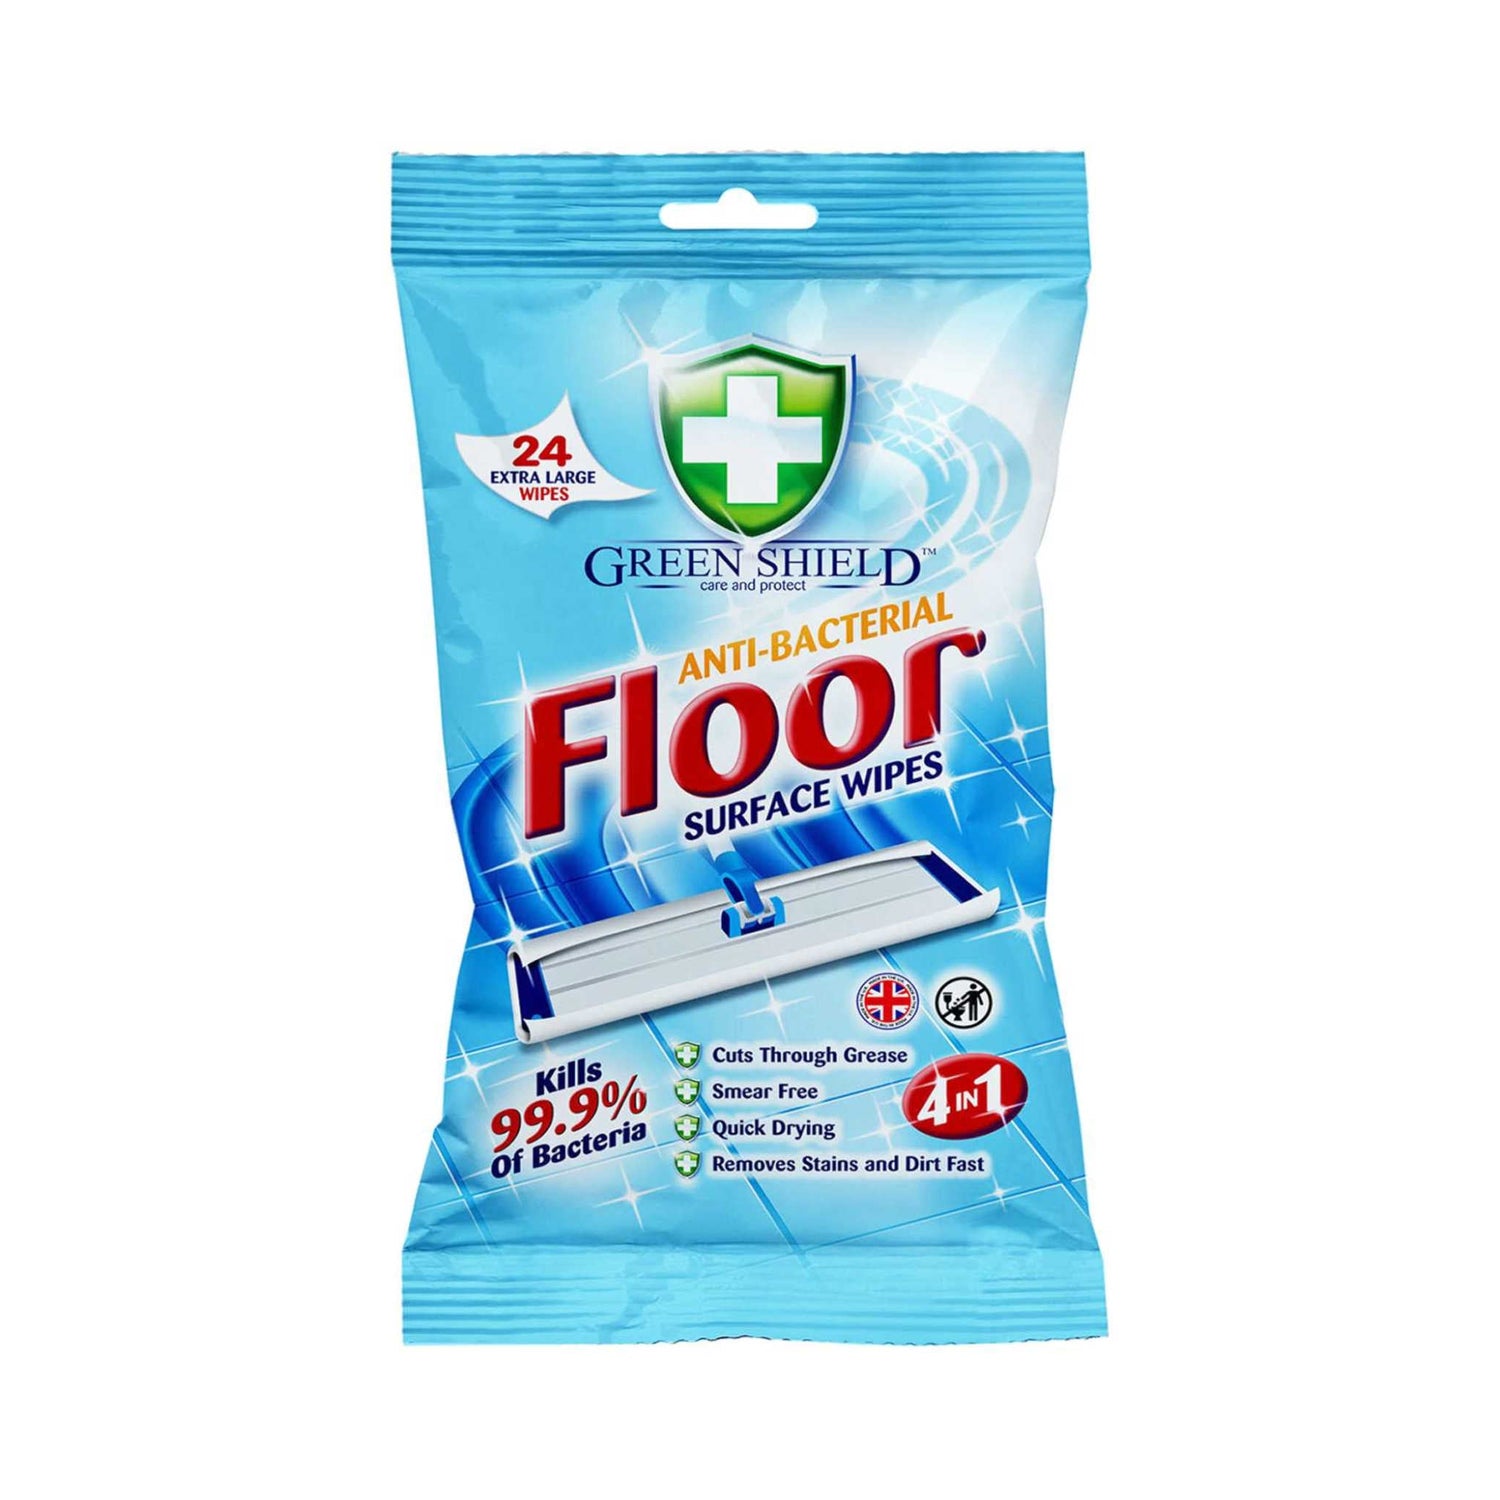 Green Shield Antibacterial Floor Surface Wipes | 24 Pack